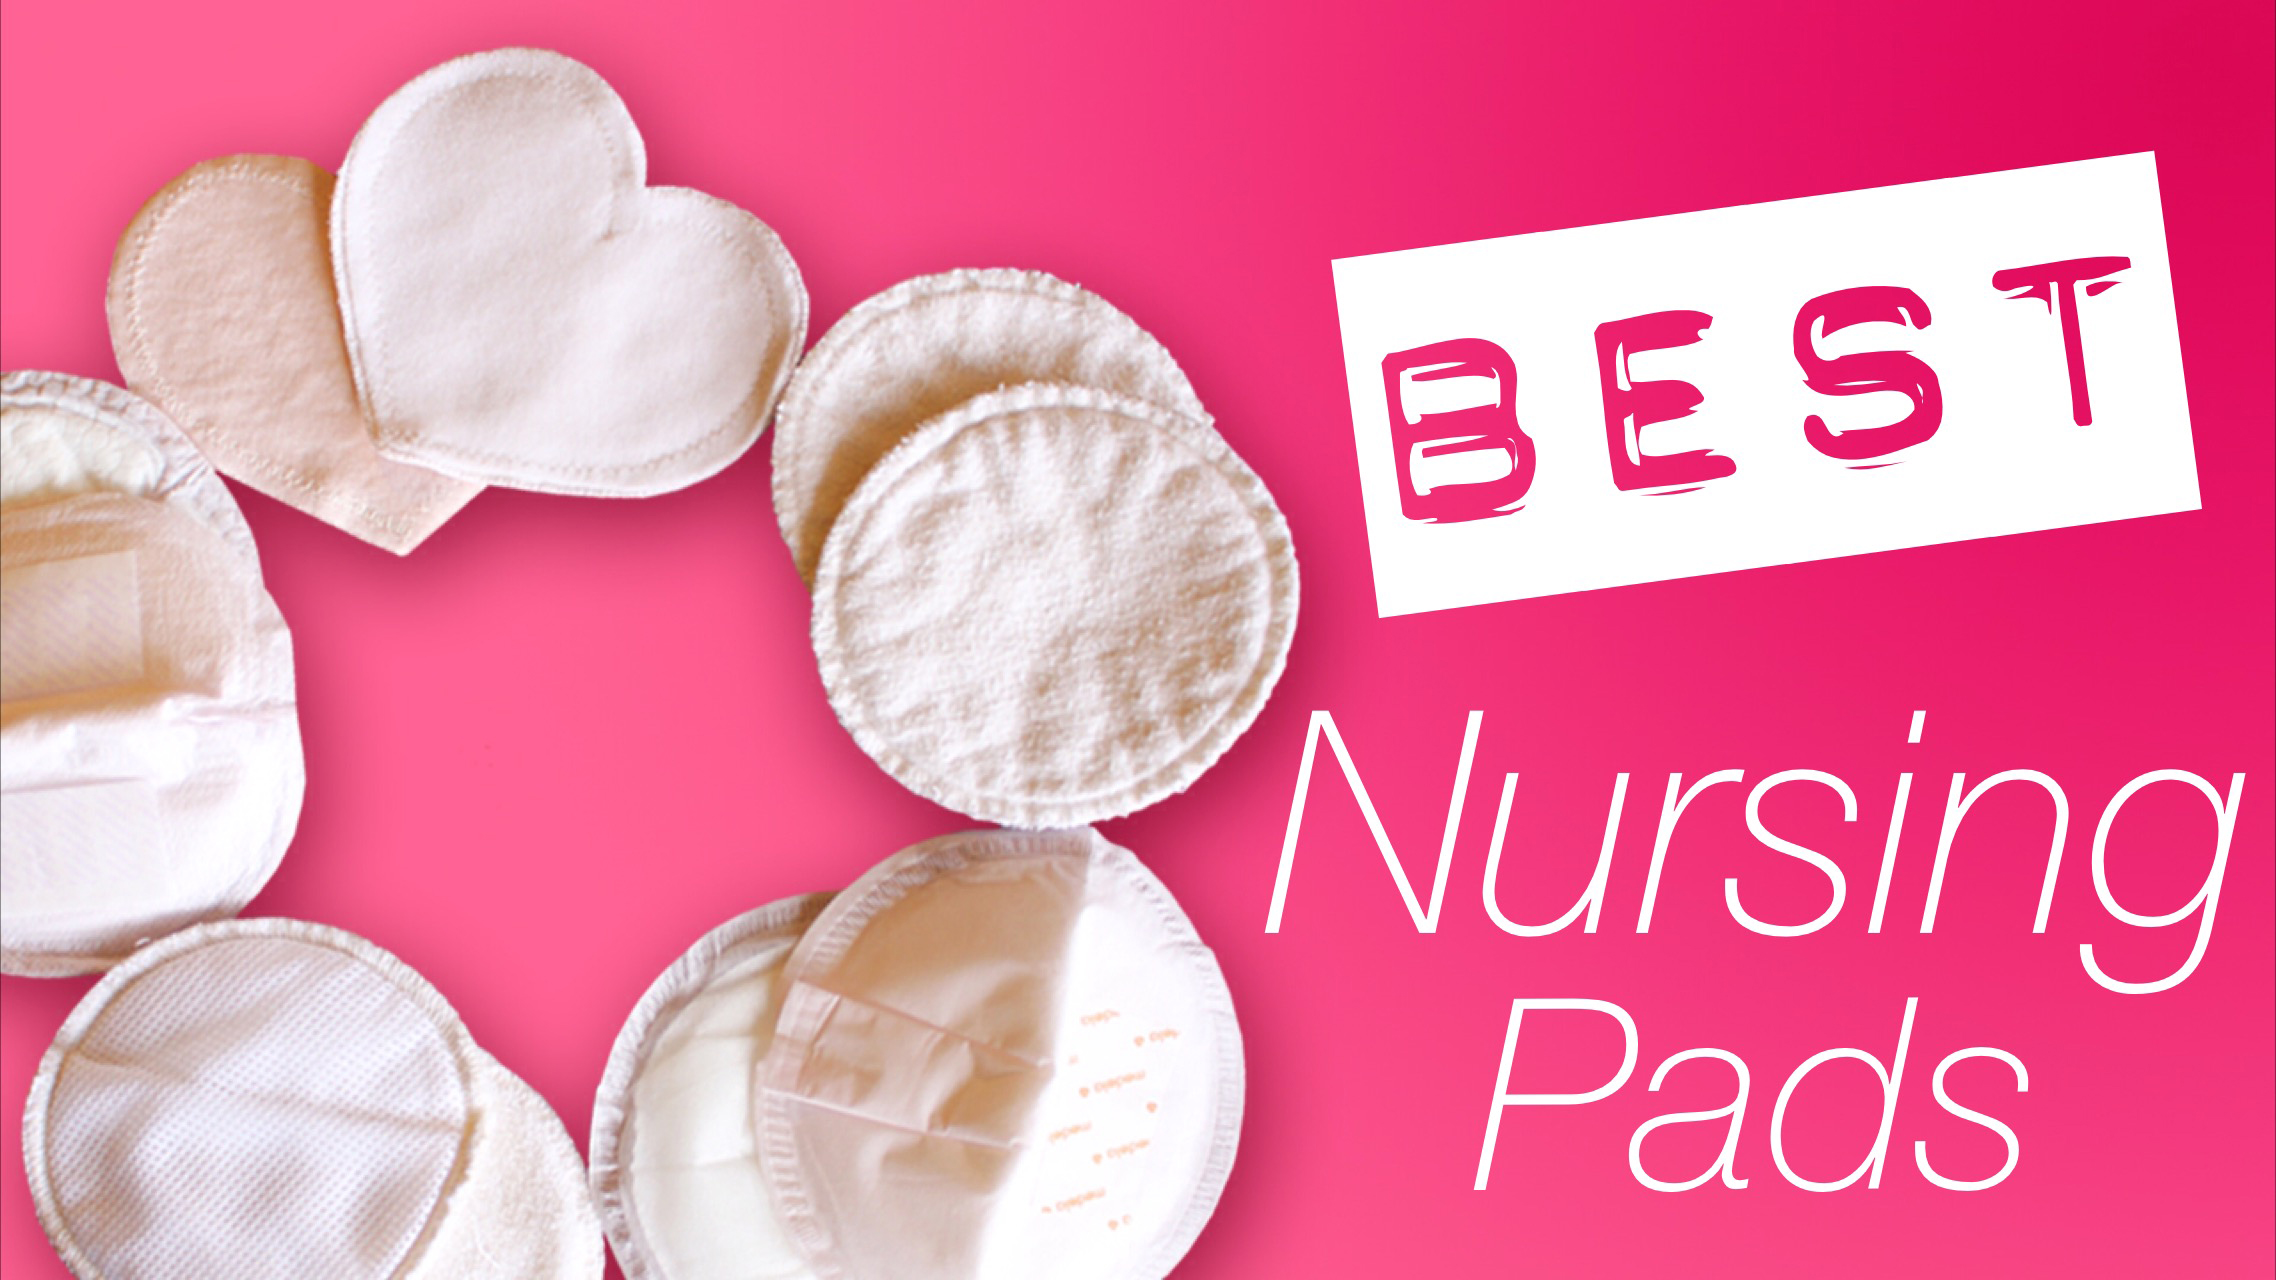 Best Nursing Pads - Let's Talk About Milk Catchers! 